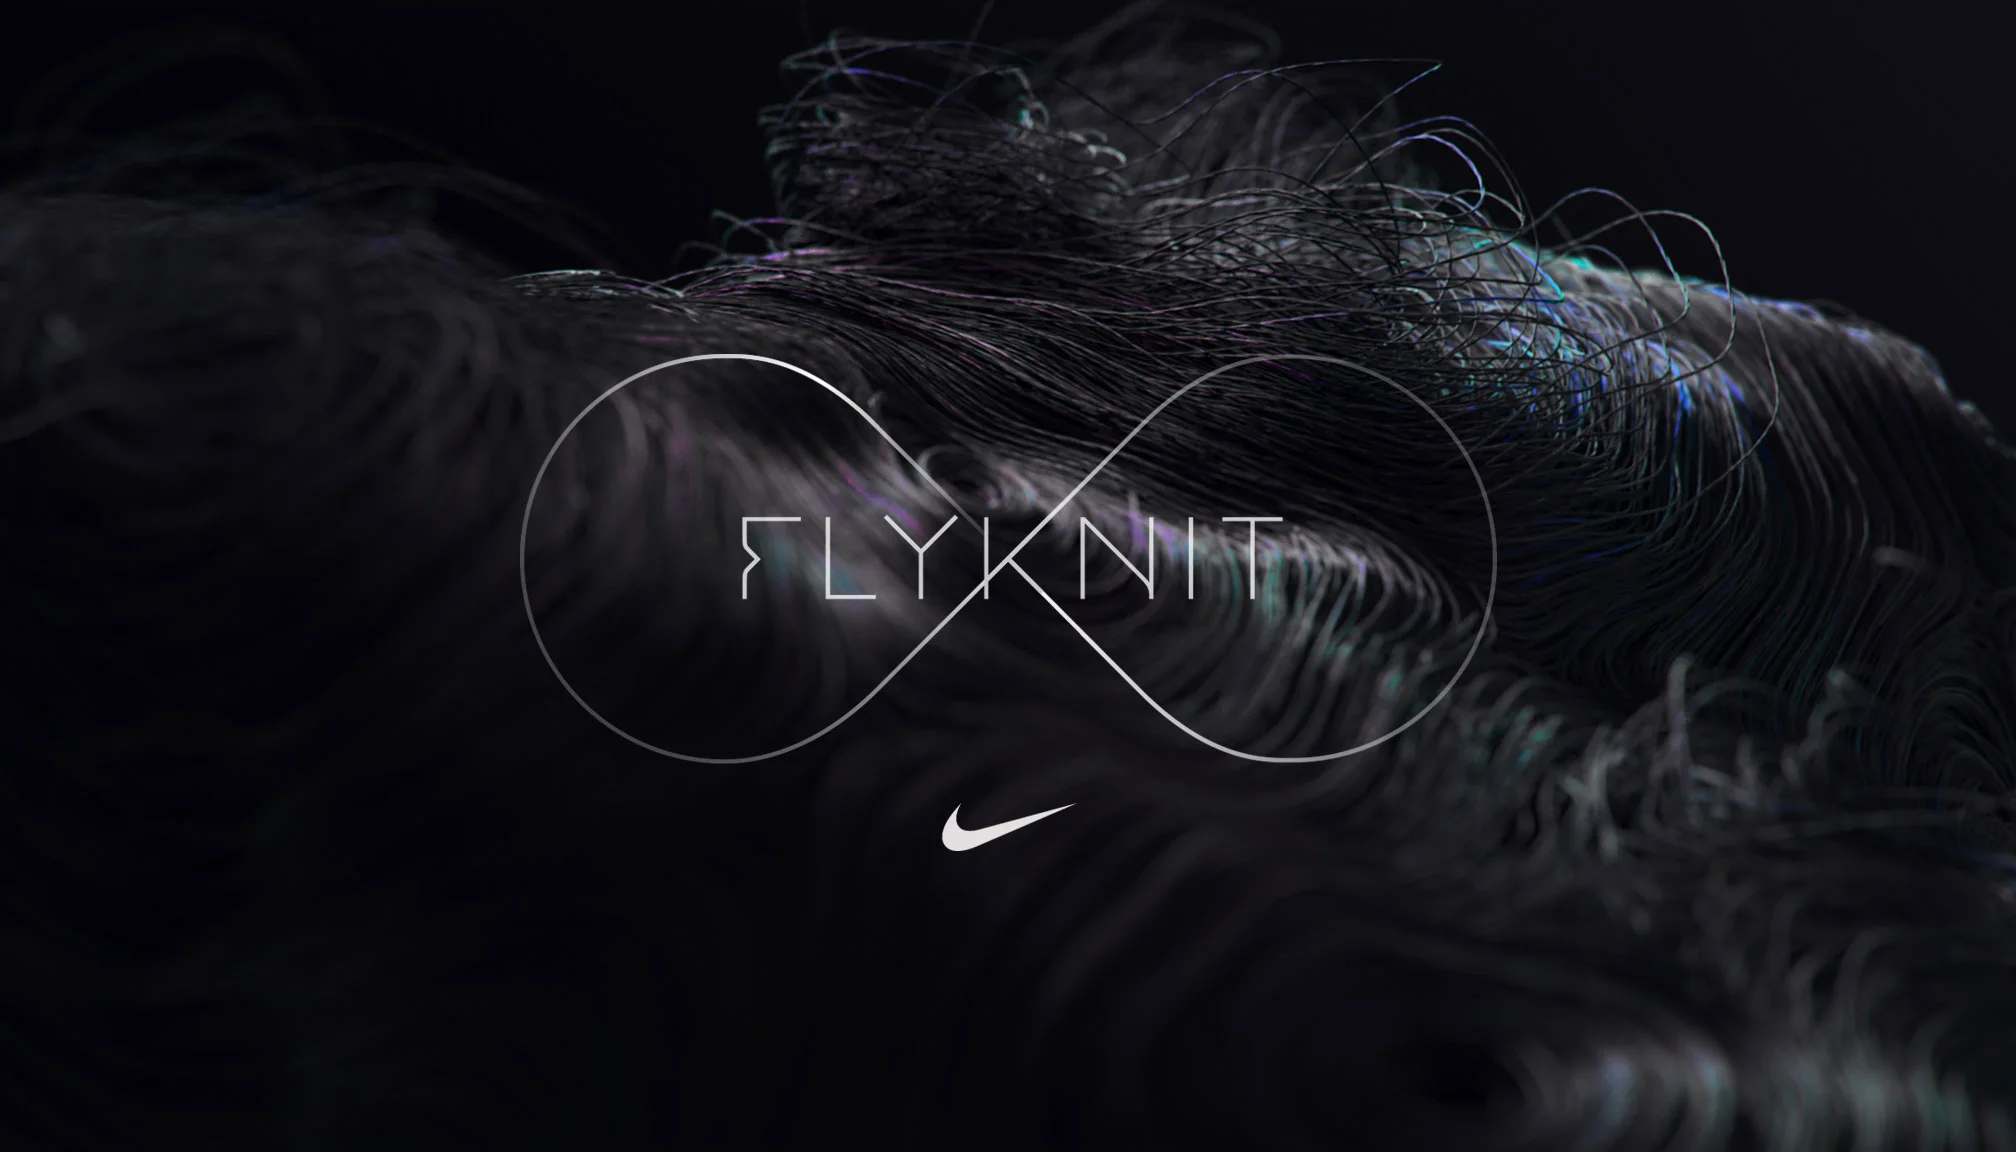 Nike ~ Flyknit on Vimeo